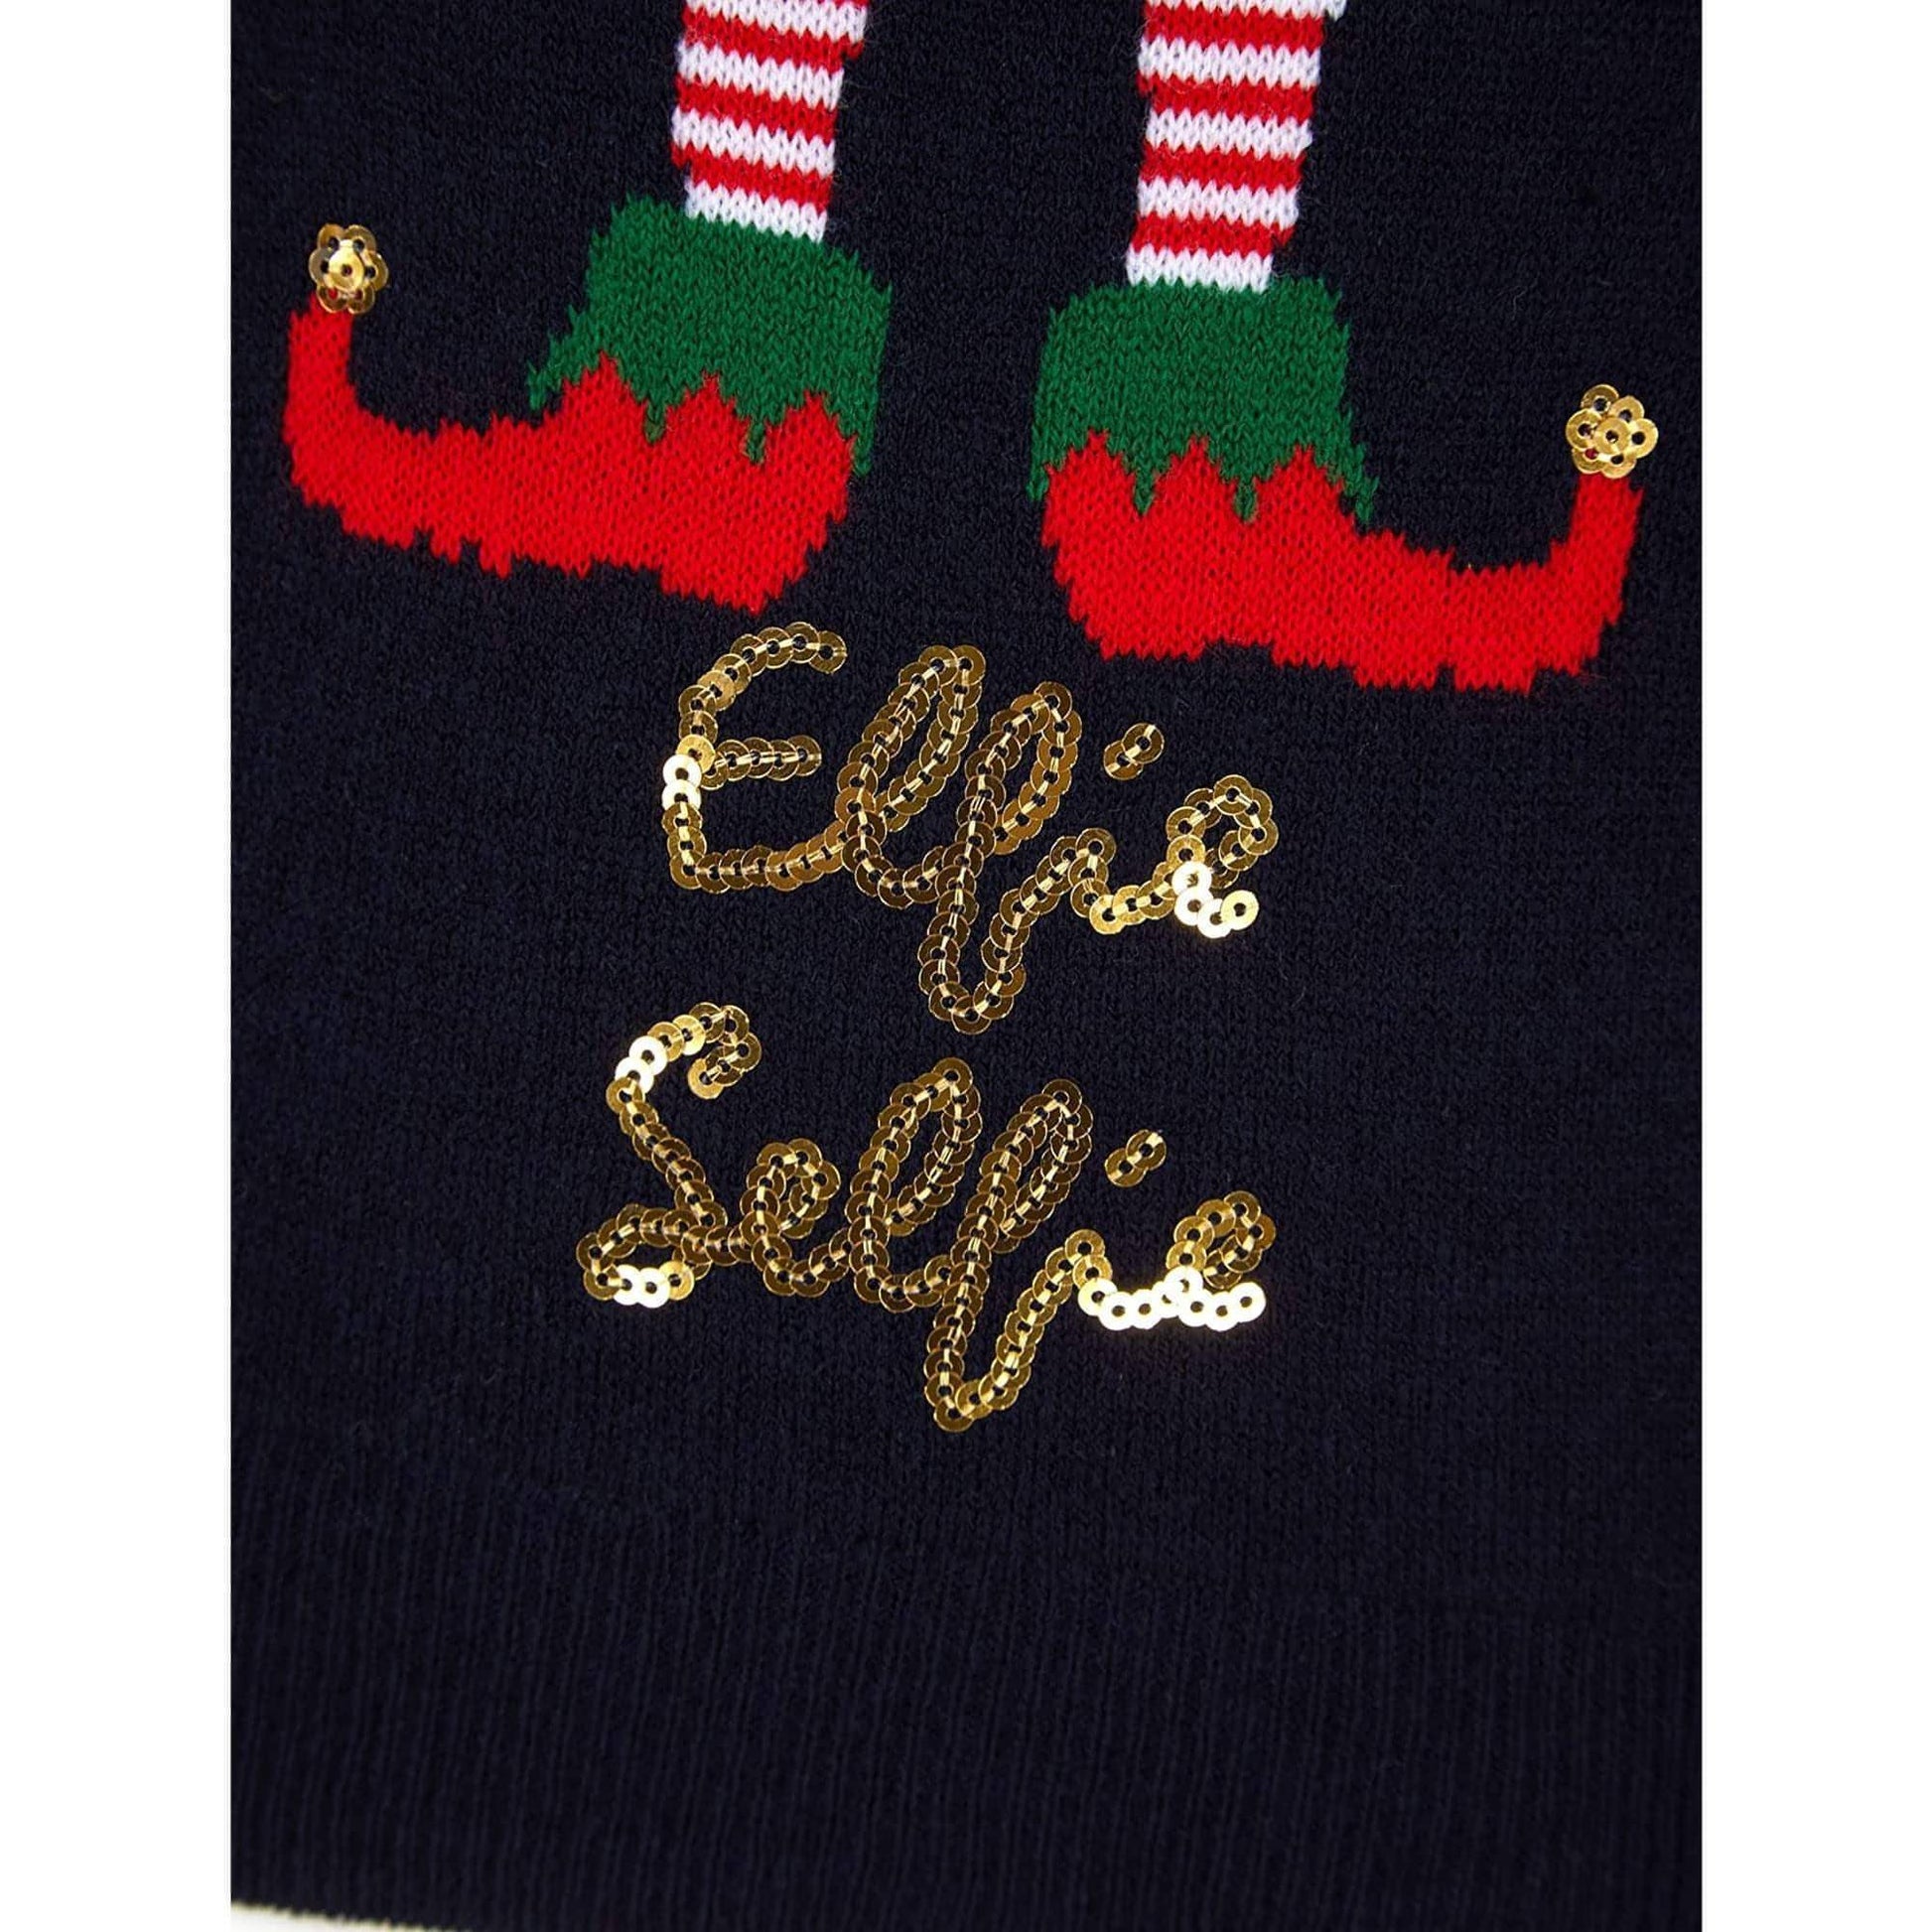 Christmas Elfie Selfie Jumper  Details